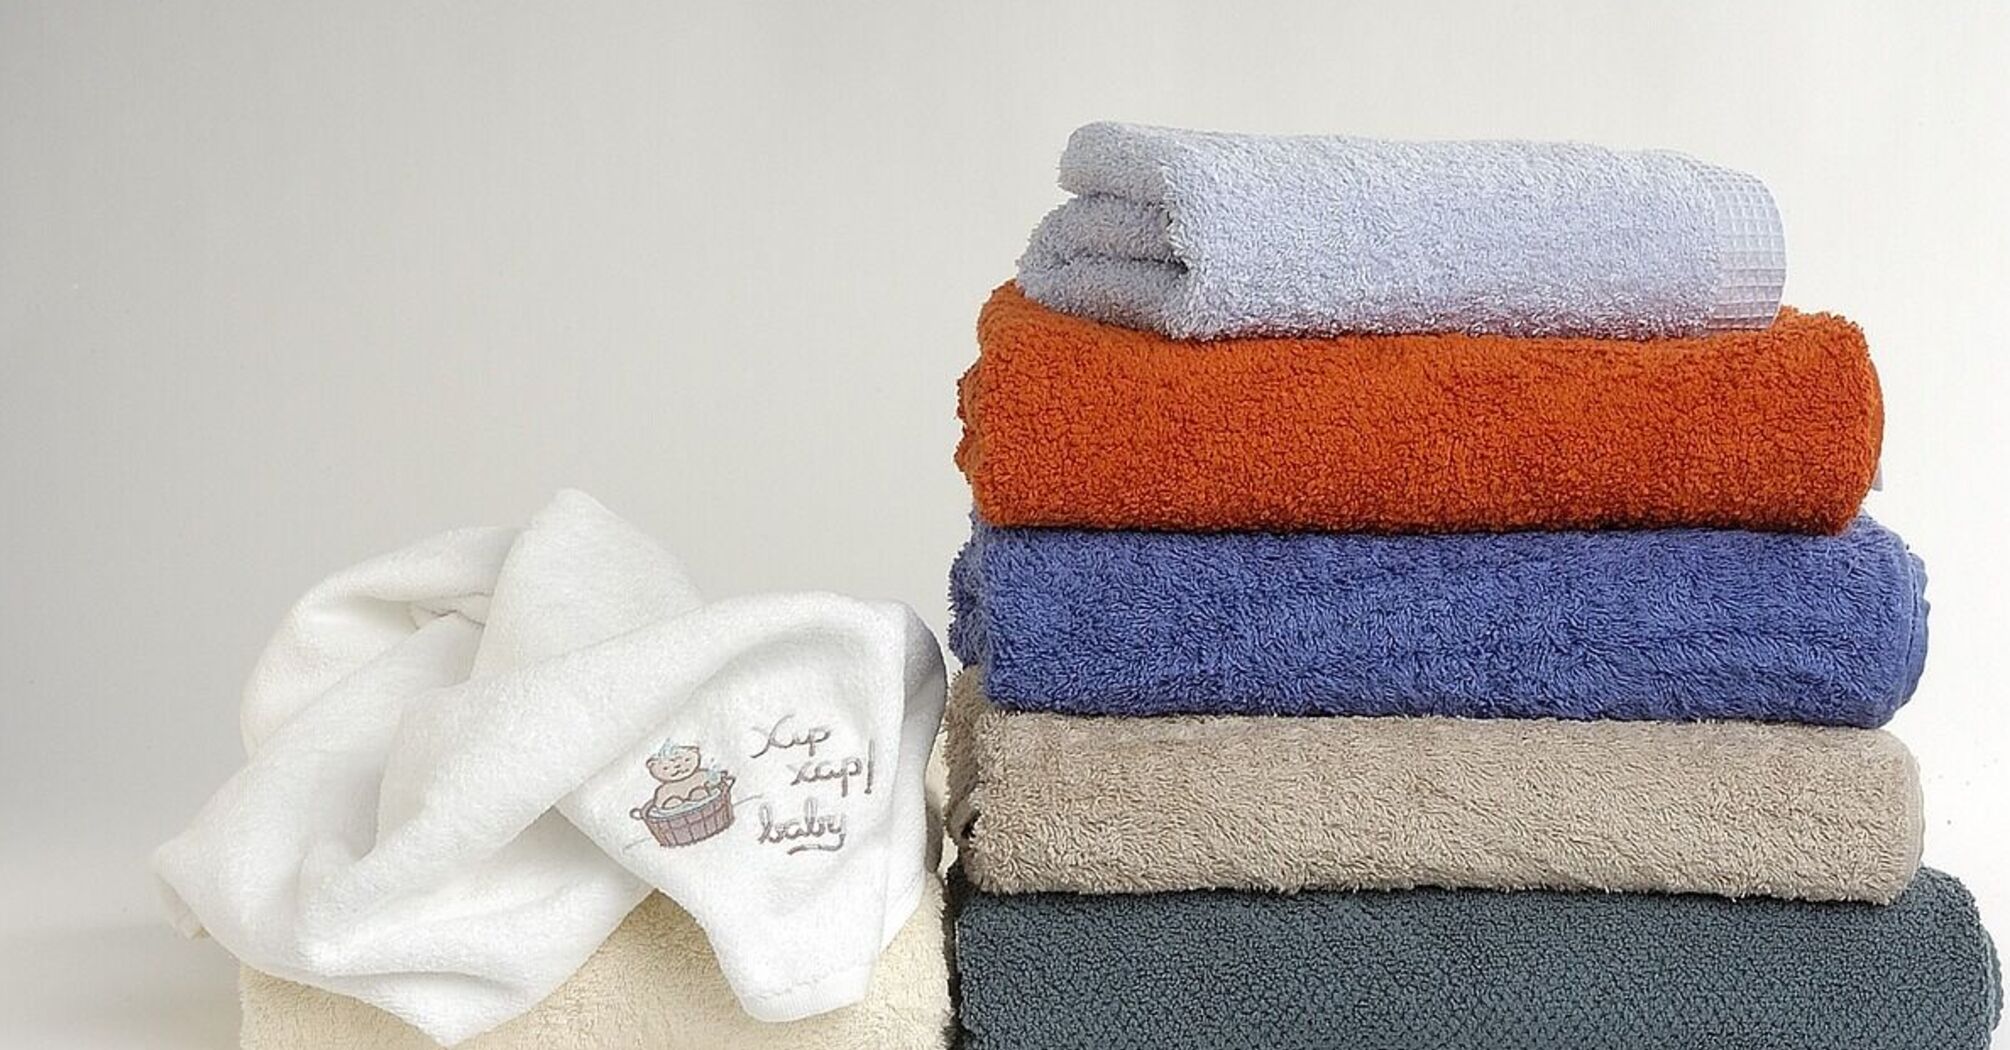 Zapomnij o twardych ręcznikach: jak sprawić, by znów były puszyste